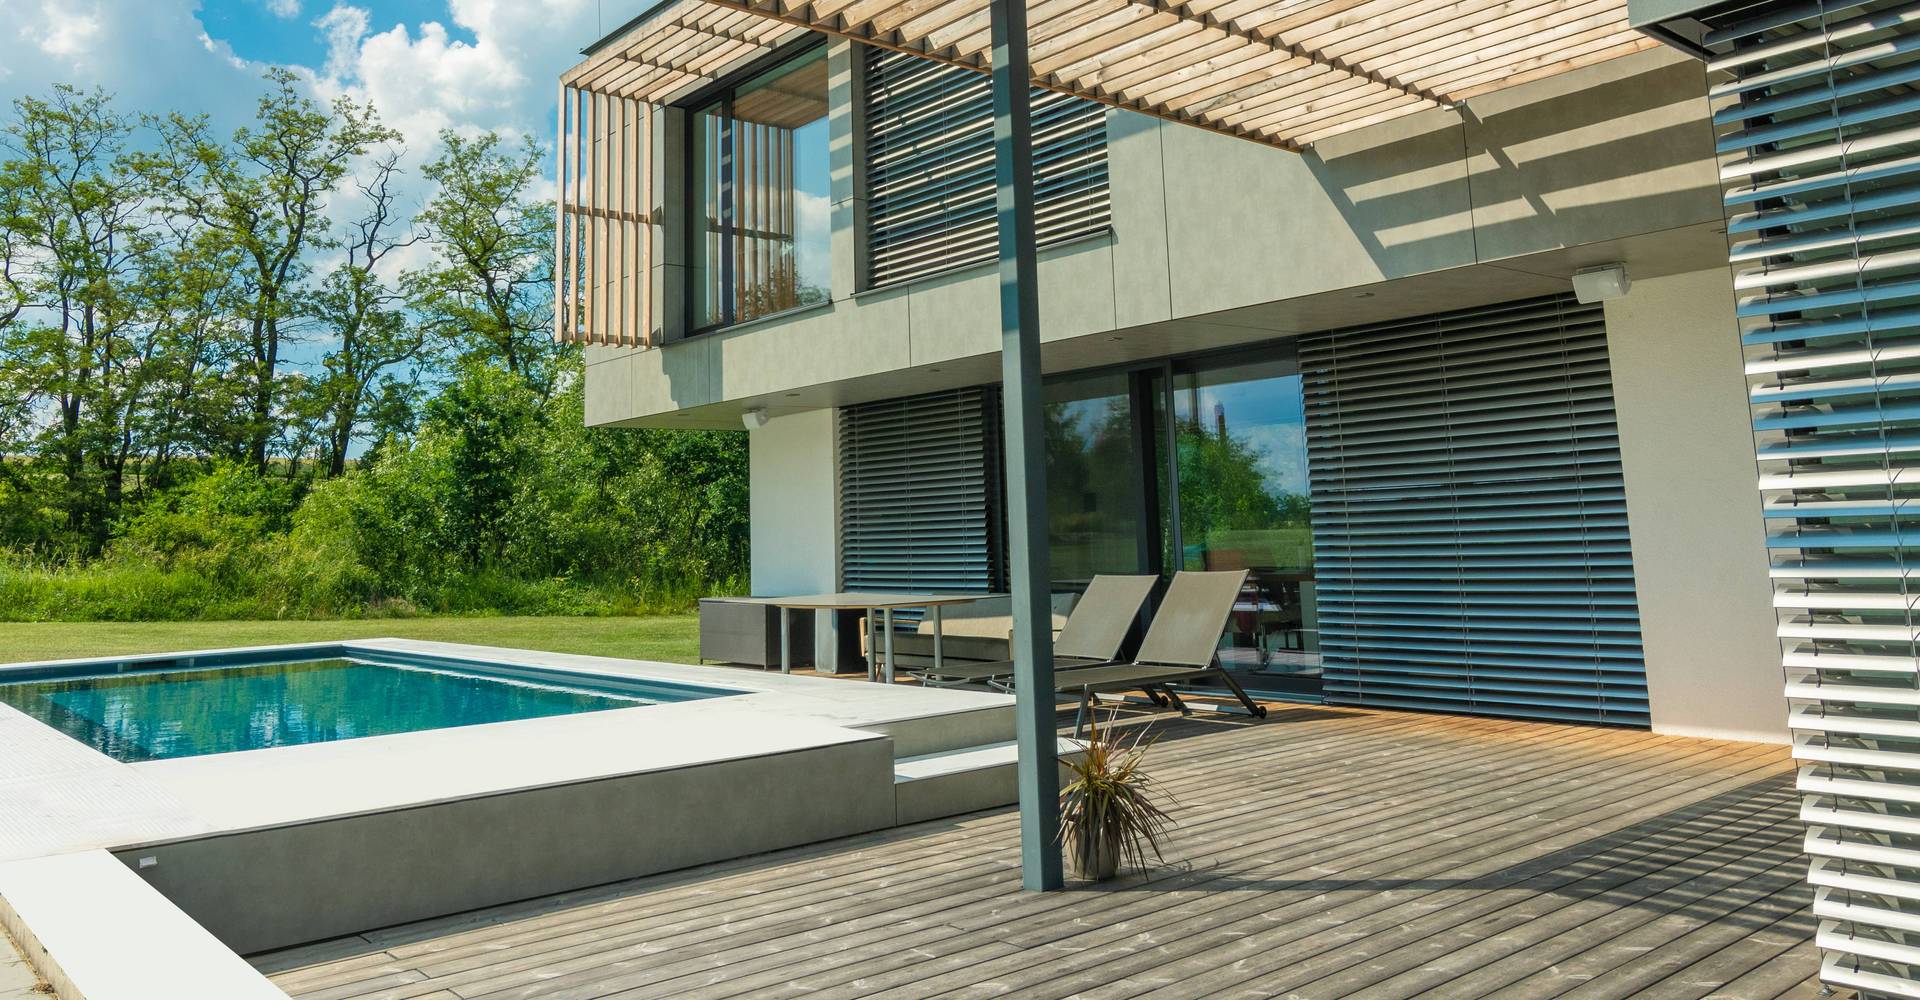 Terrasse aus Holz mit Pool